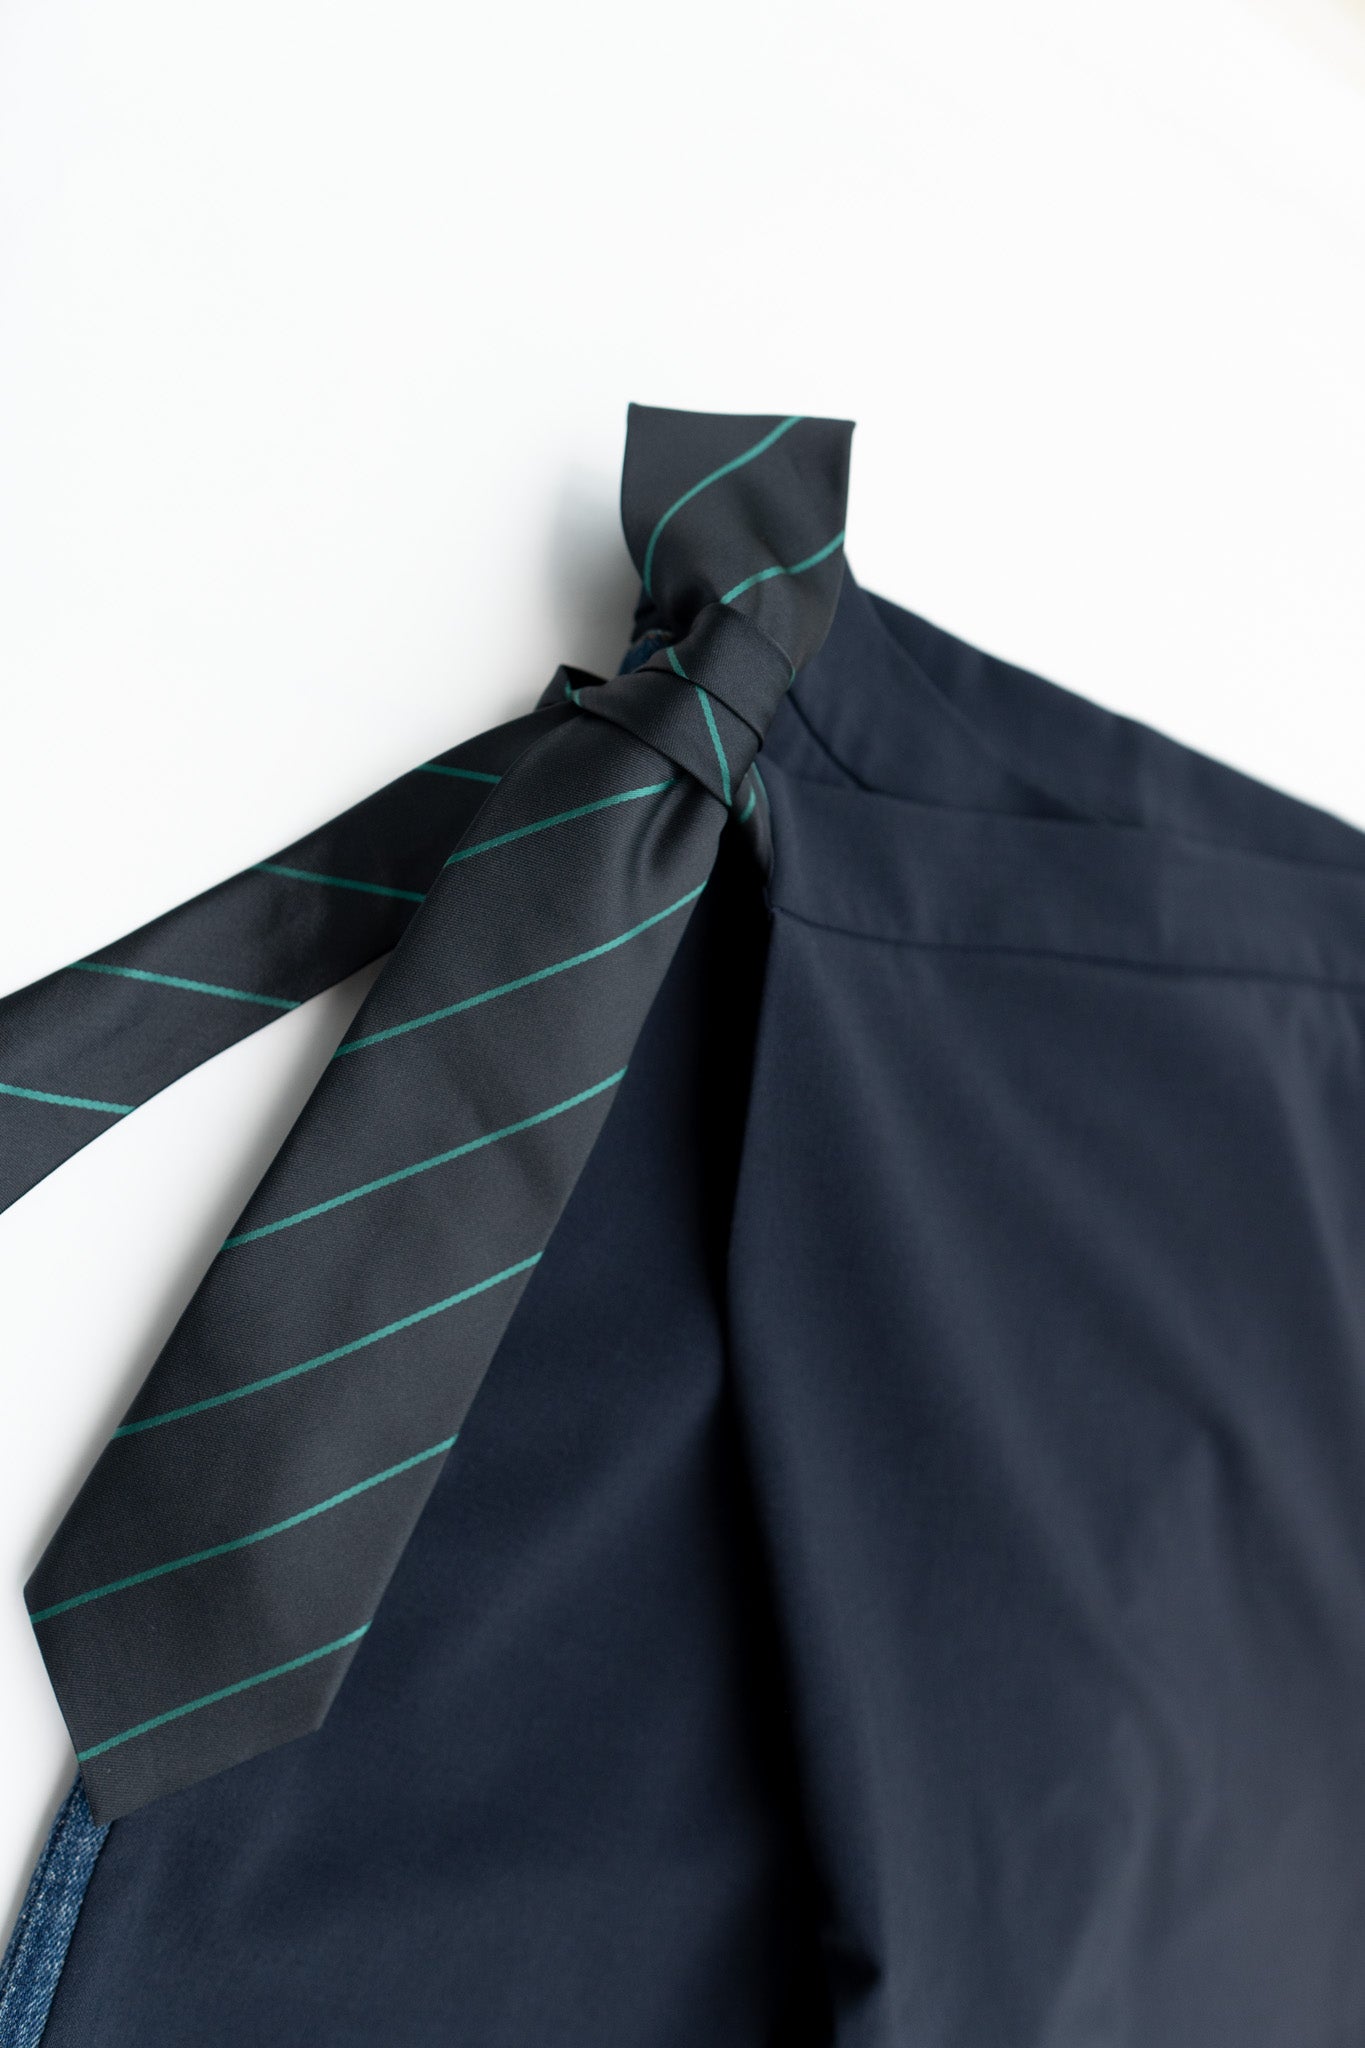 CASE2-green tie